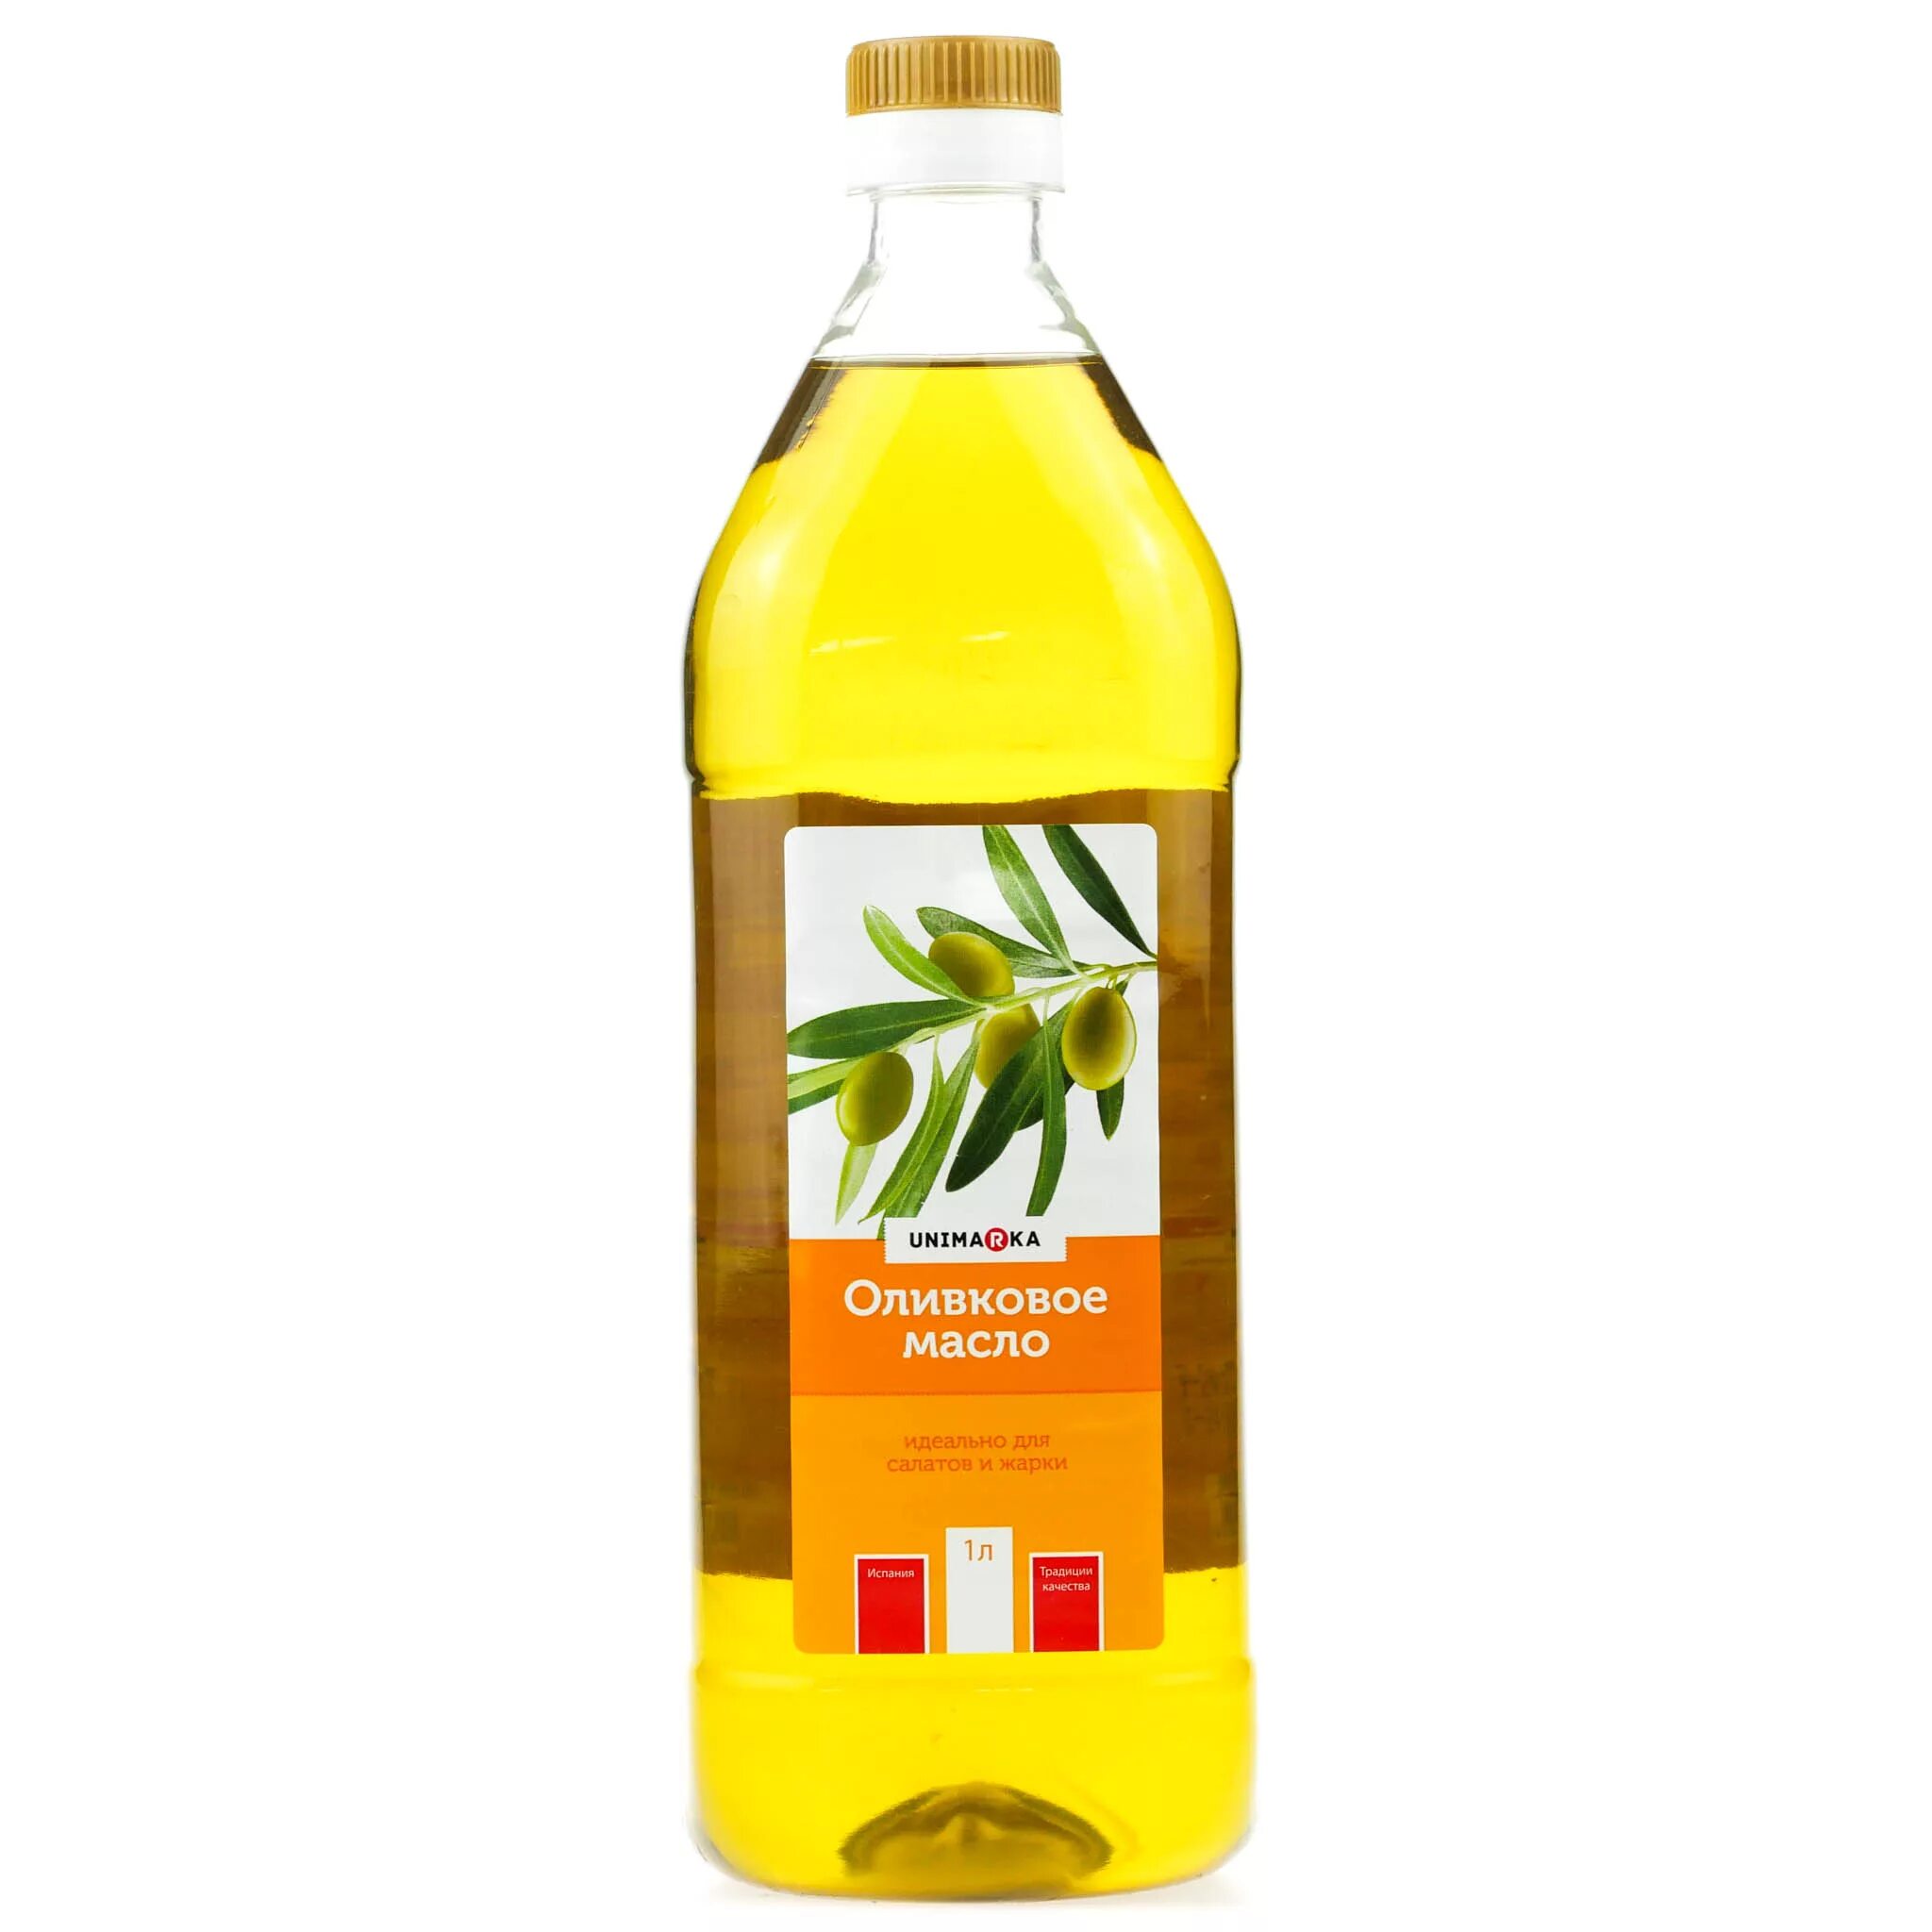 Оливковое масло для салатов нерафинированное. Оливковое масло botanika 1 л рафинированное. Оливковое масло рафинированное и нерафинированное. Масло рапсовое нерафинированное. Рафинированное масло оливковое для салата.